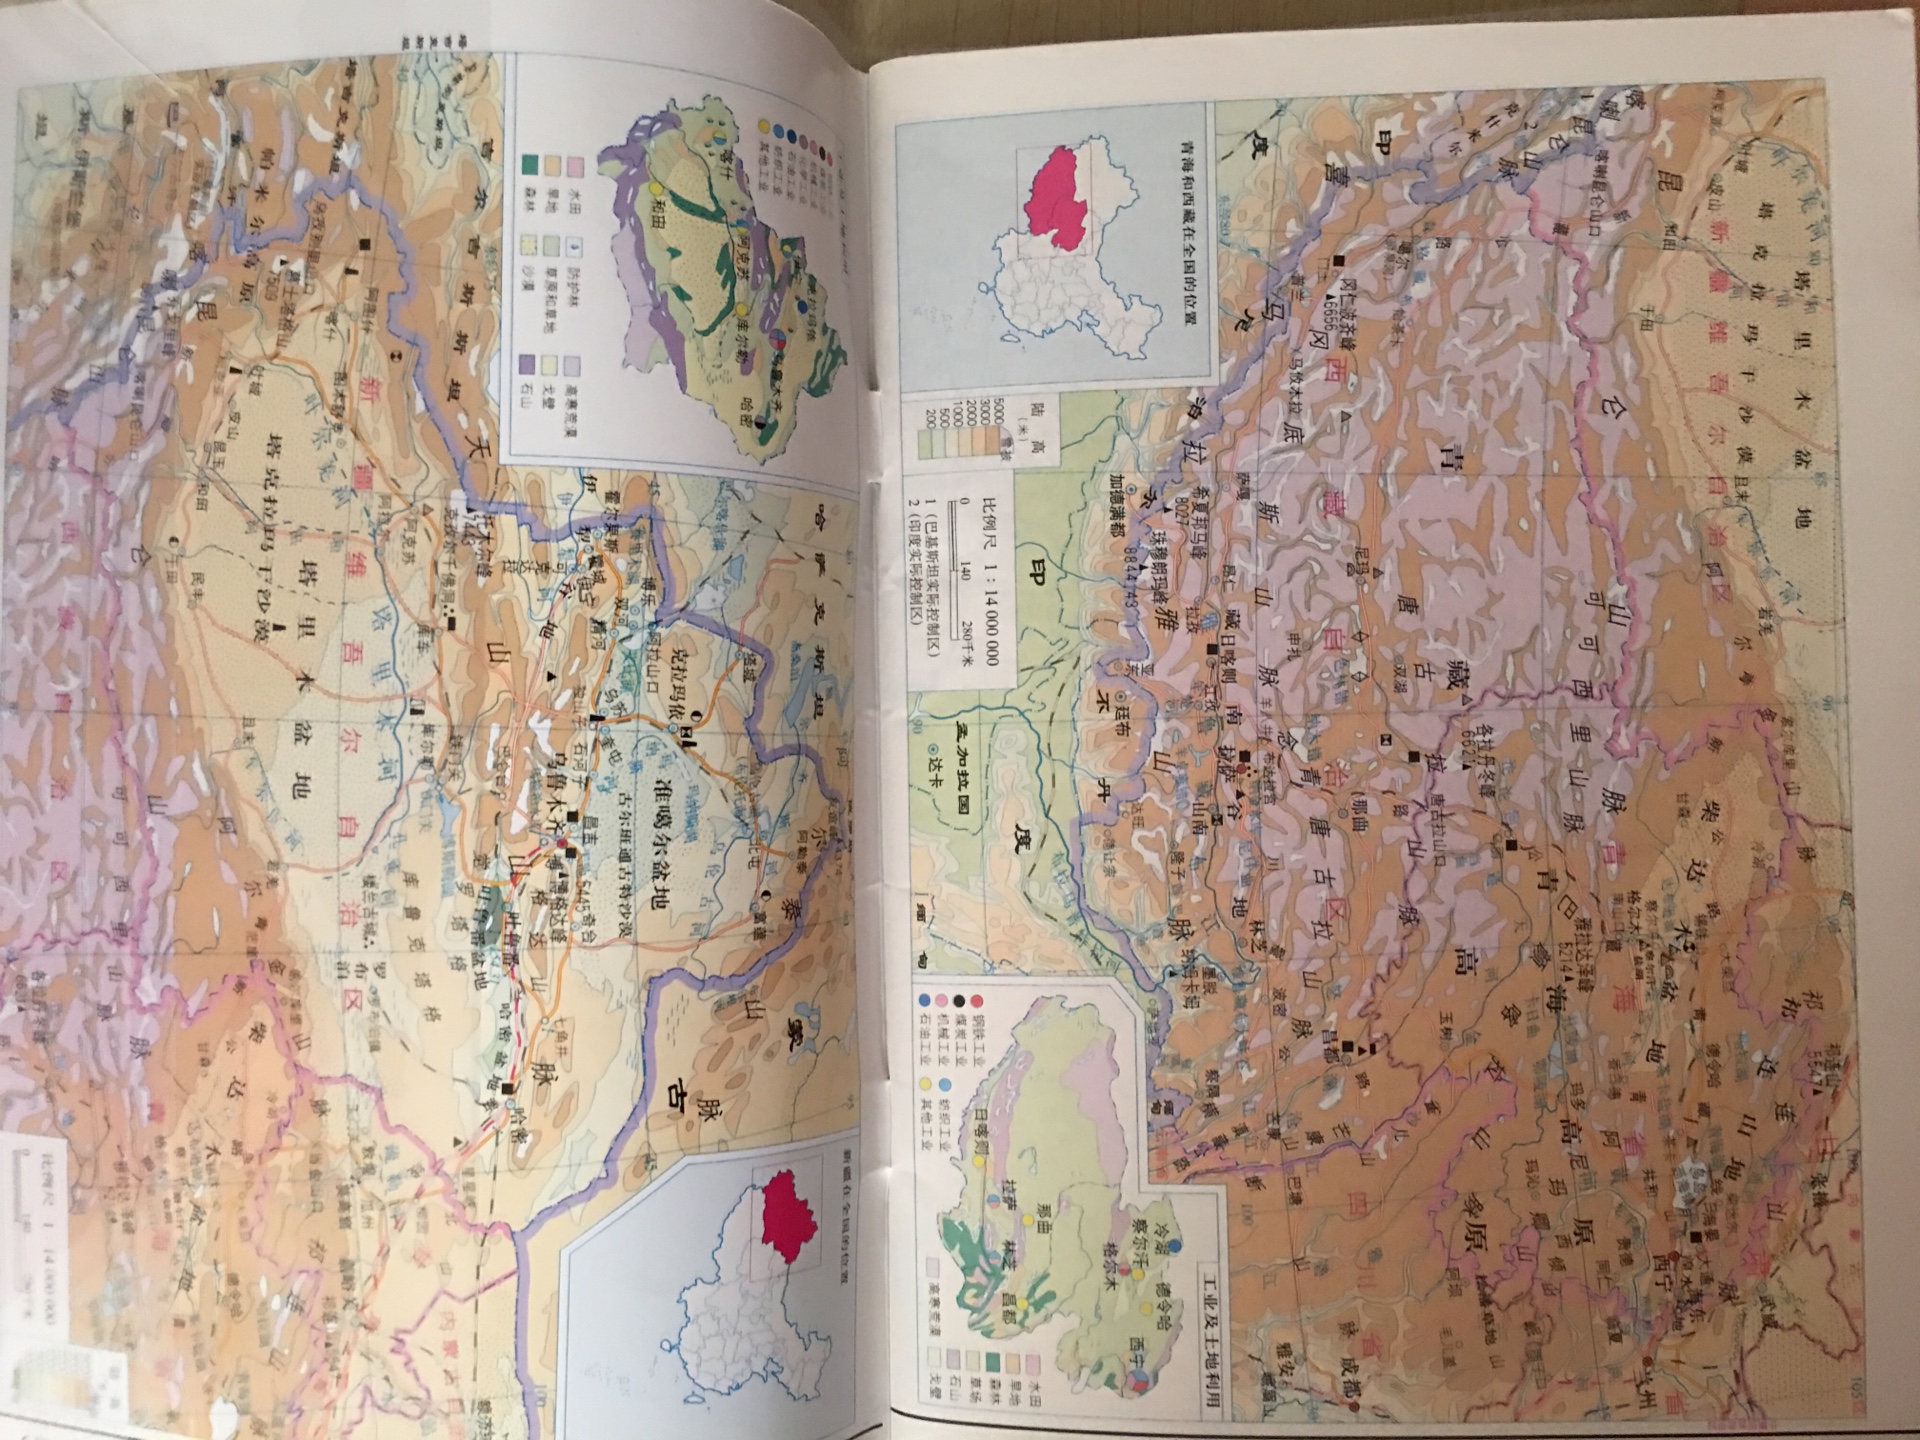 孩子老师要求带小的中国地图，上次在买的都是大图，只能再买一份了，挑了很久，终于找到了，非常不错，内容很多，知识点也很详尽，一致好评……